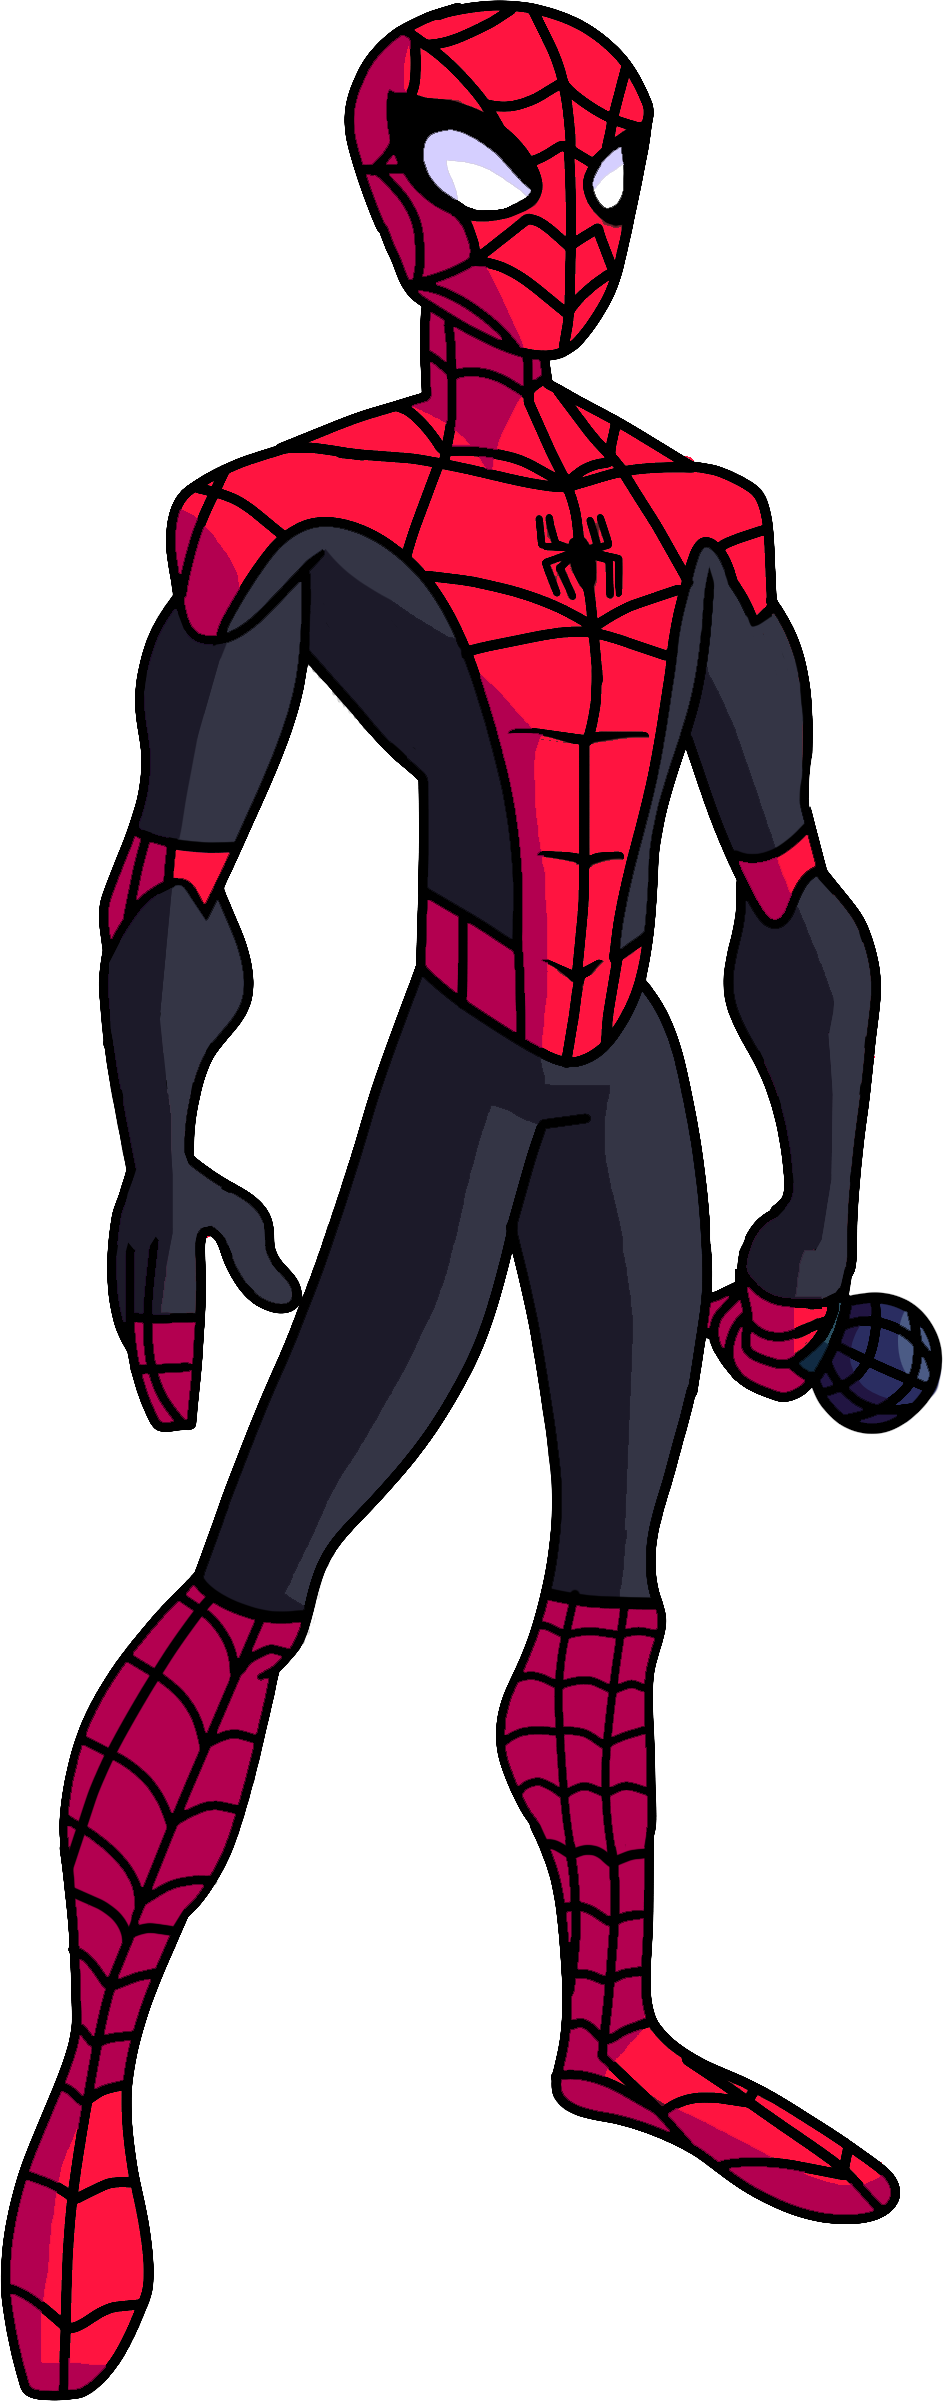 Marvel's Spider-Man – Blueknight V2.0